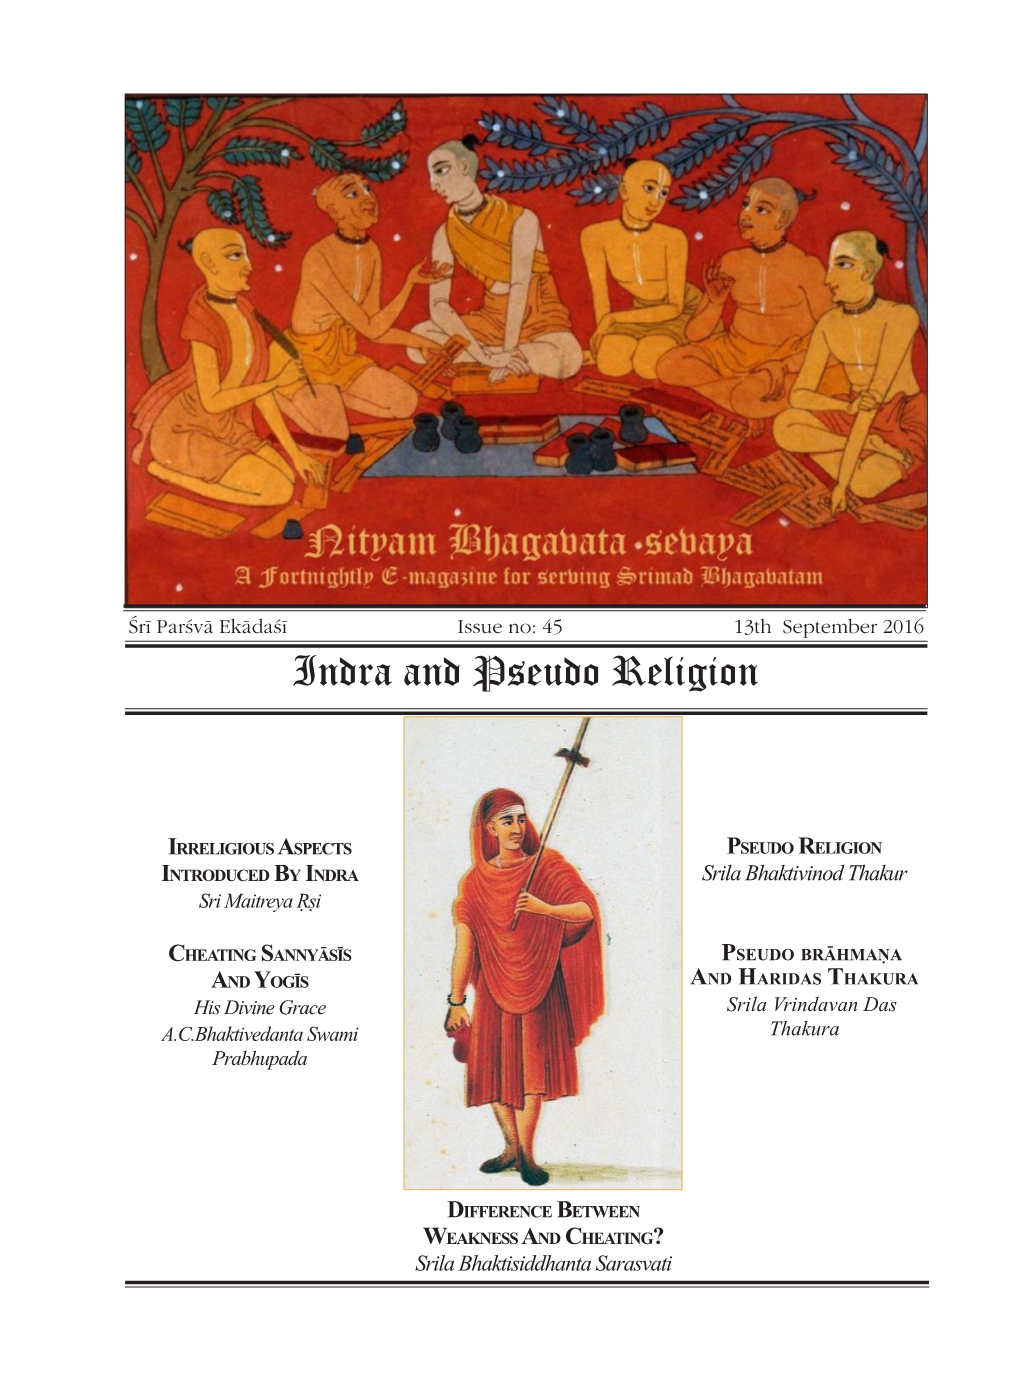 Indra and Pseudo Religion